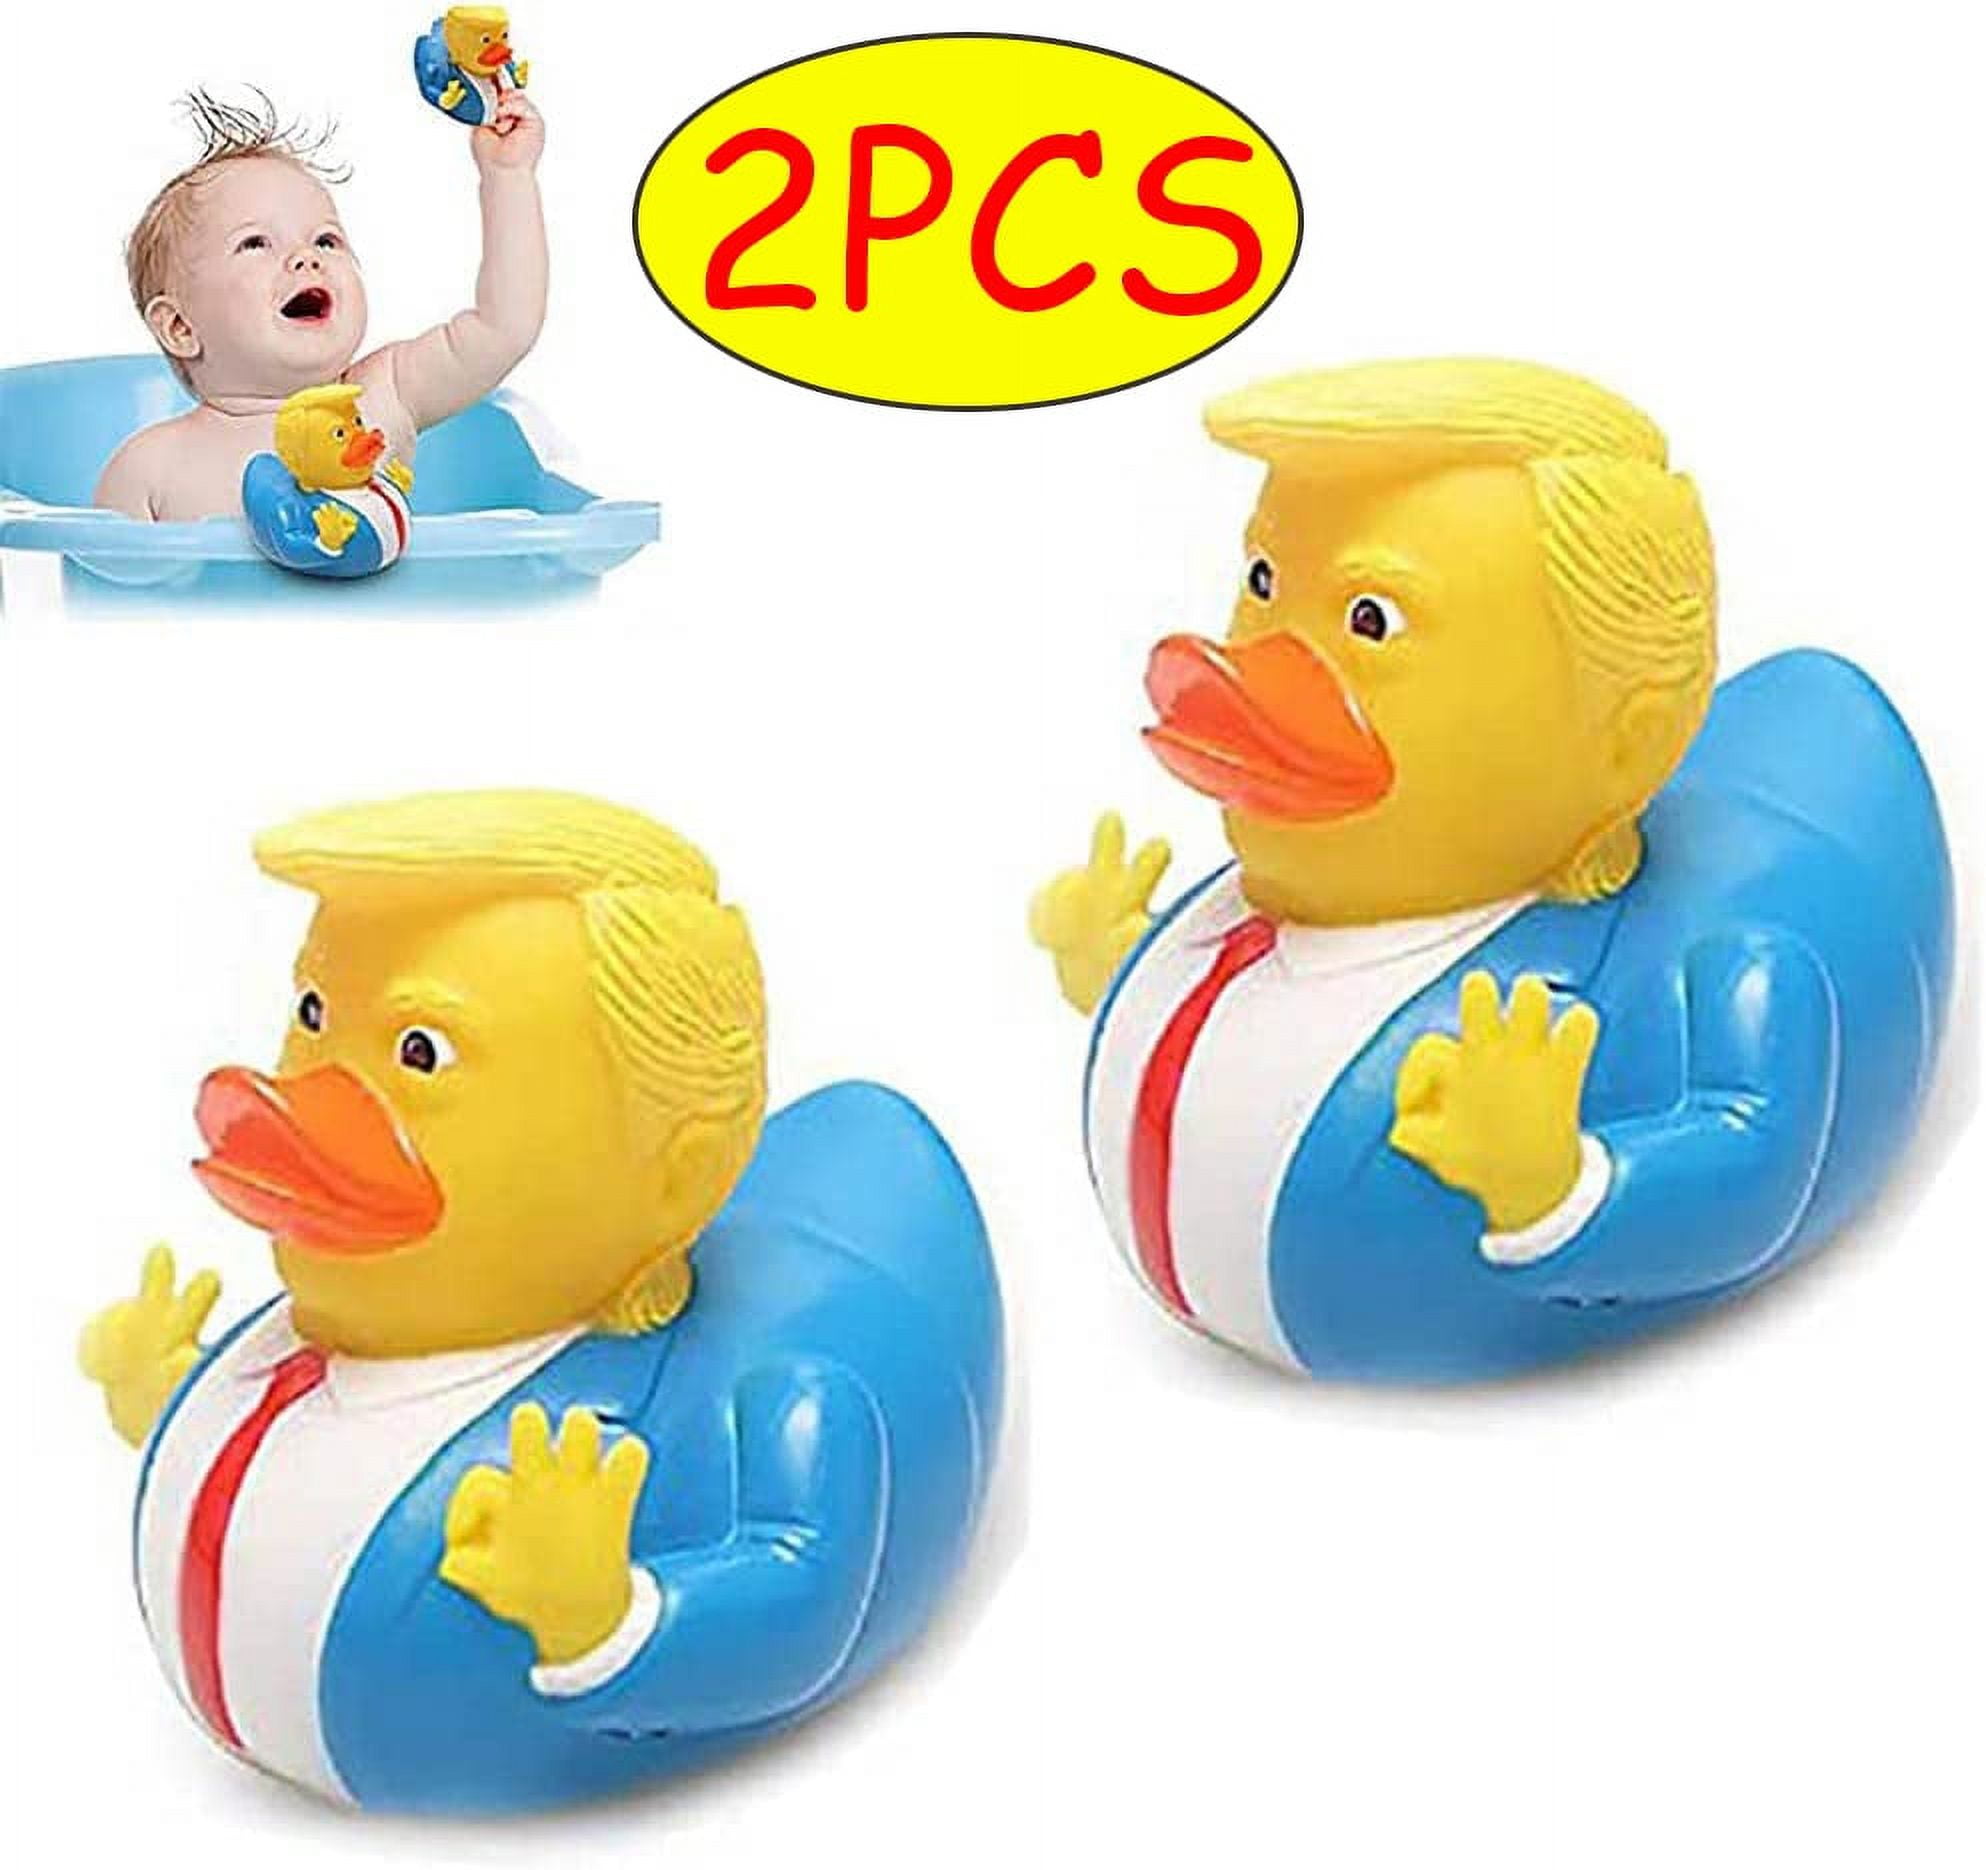 Trump Rubber Ducky